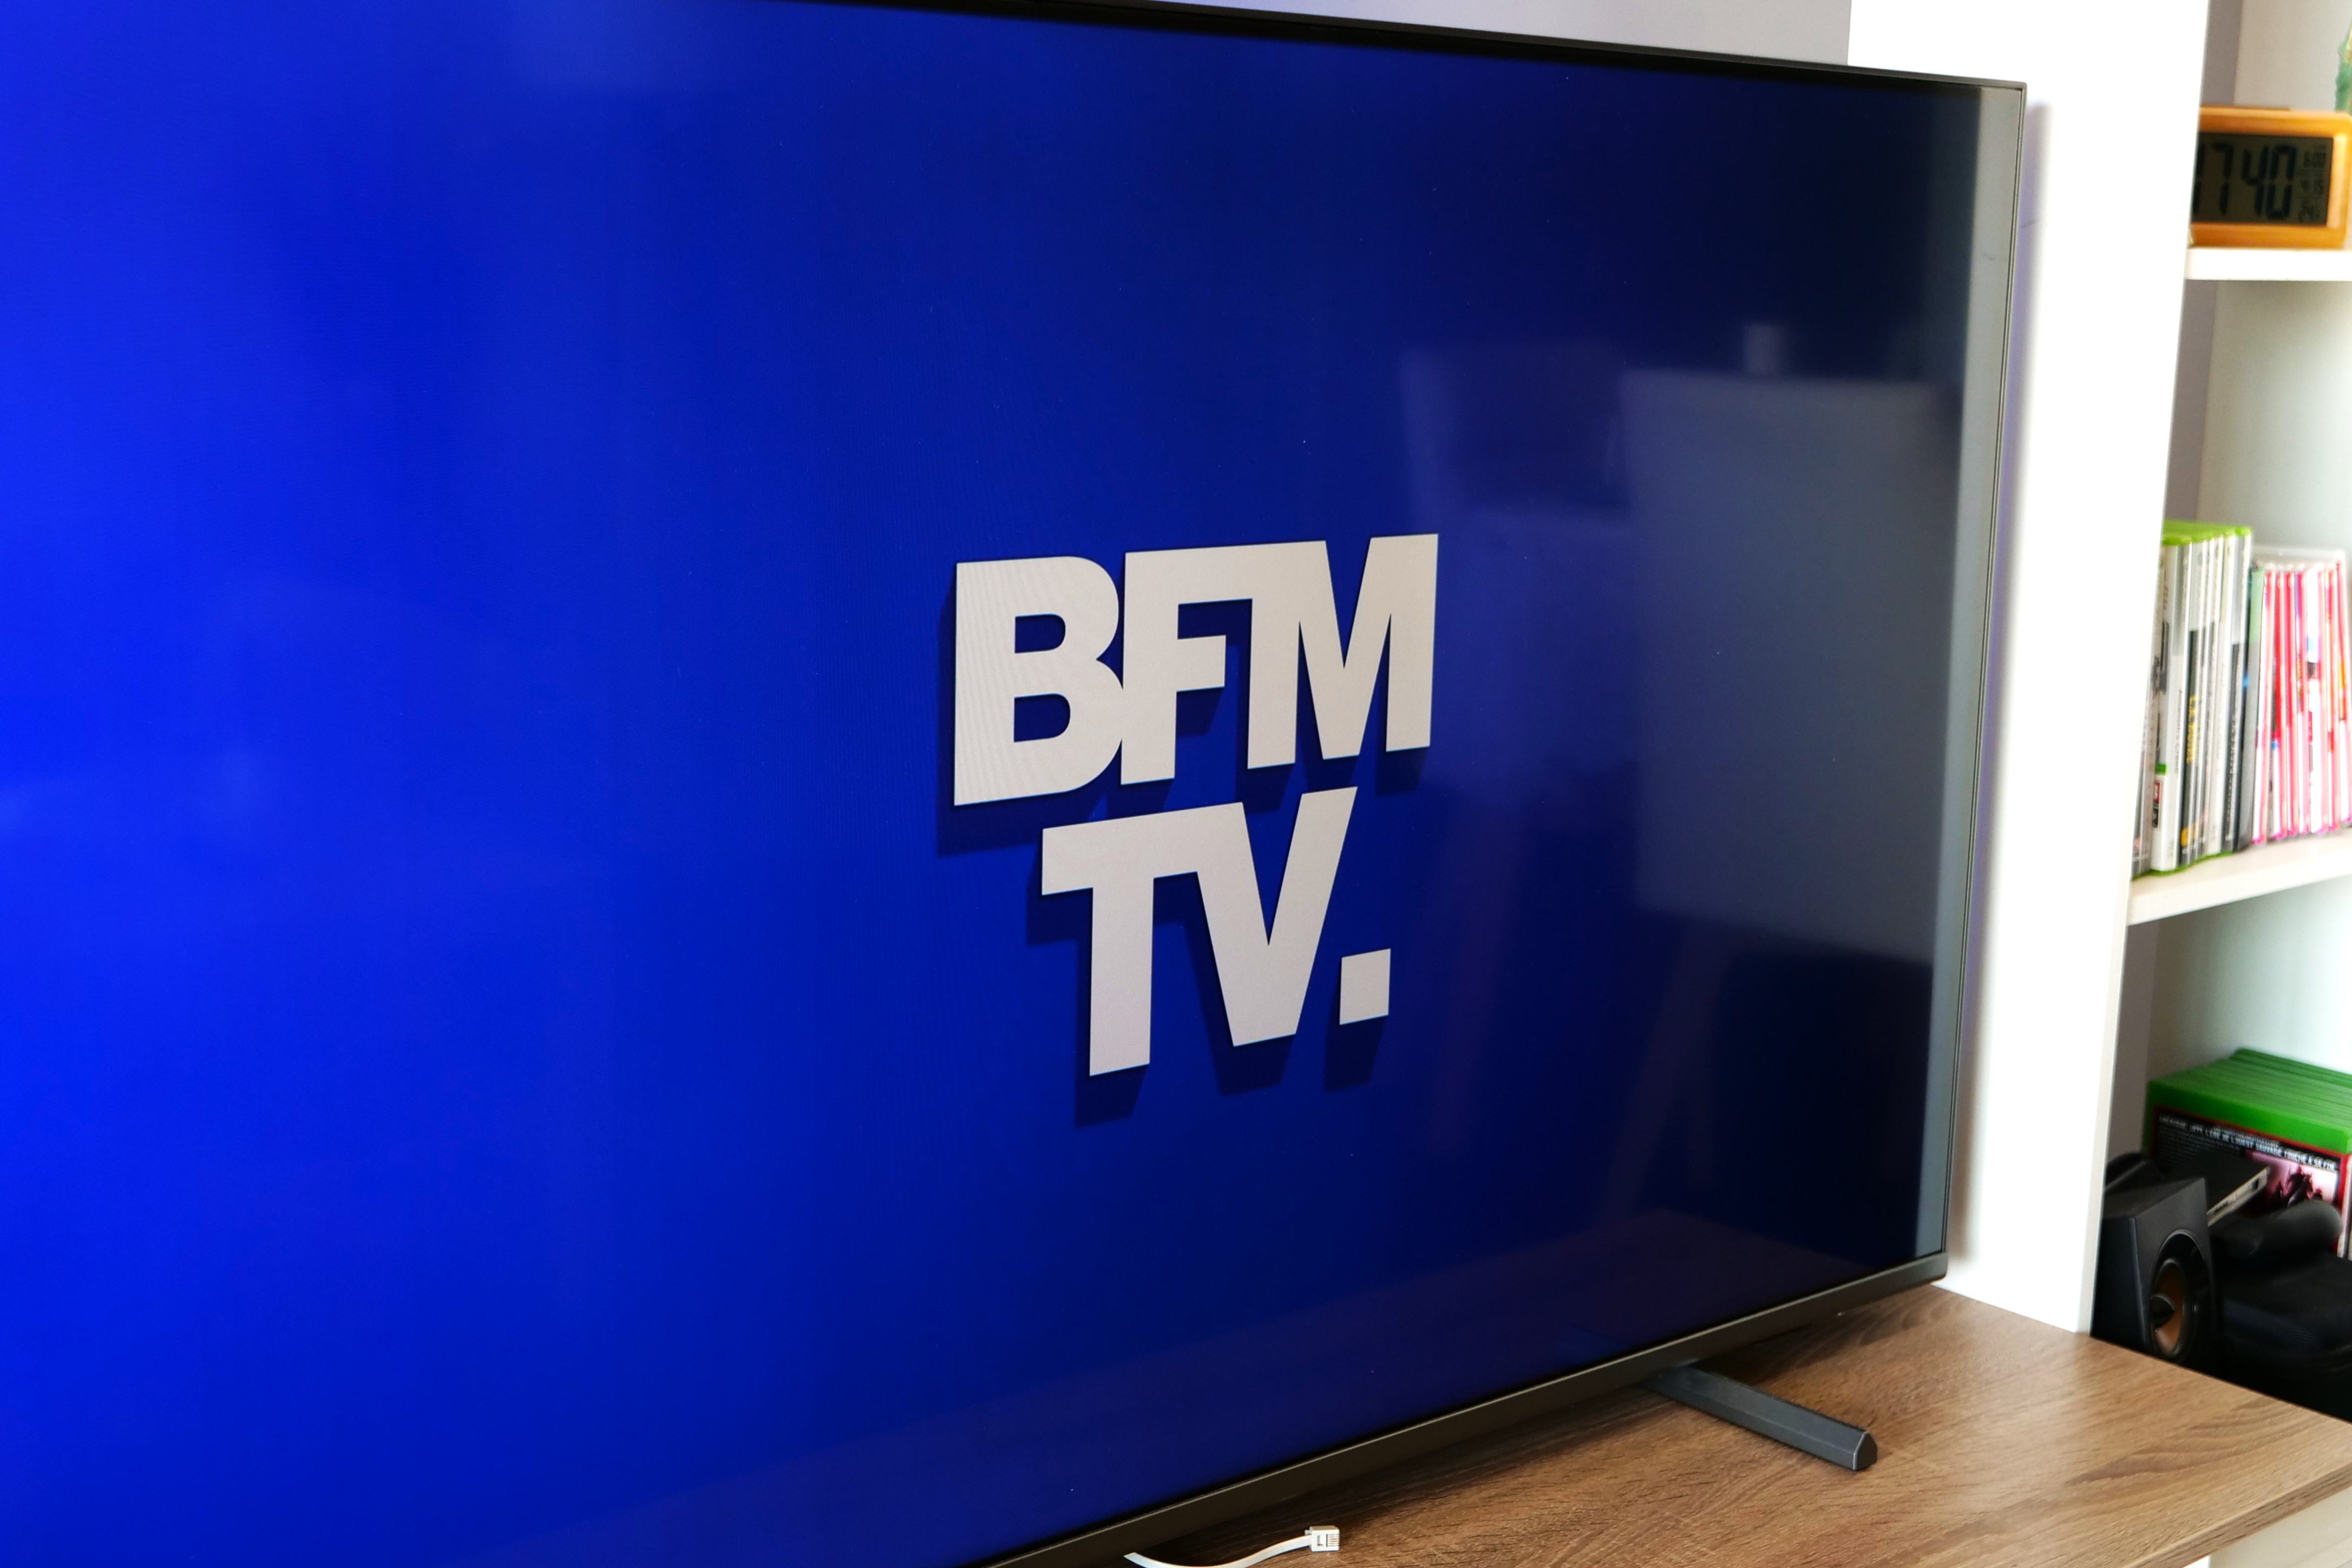 BFMTV, RMC, et les chaînes TV d'Altice Média hors service, une cyberattaque avant l'interview d'Emmanuel Macron ?